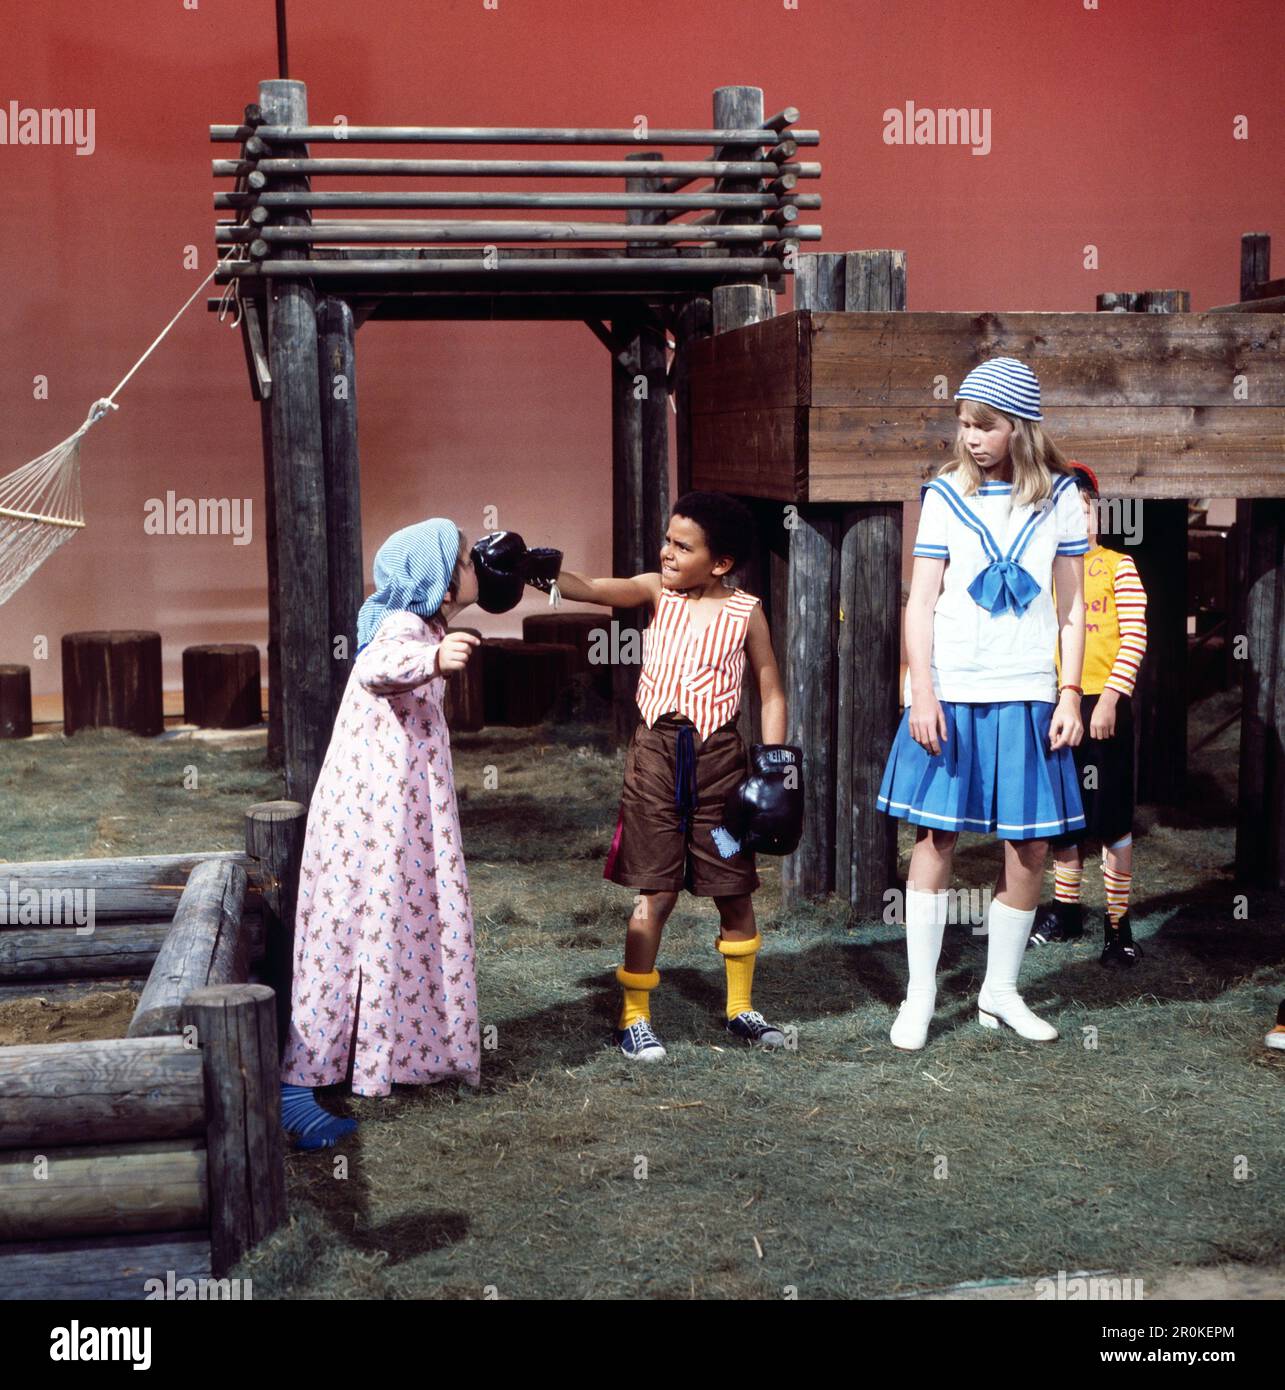 Babbelgamm, Kindersendung, Deutschland 1977, Mitwirkende: David Baalcke, Gould Maynard, Marion Kracht Foto Stock